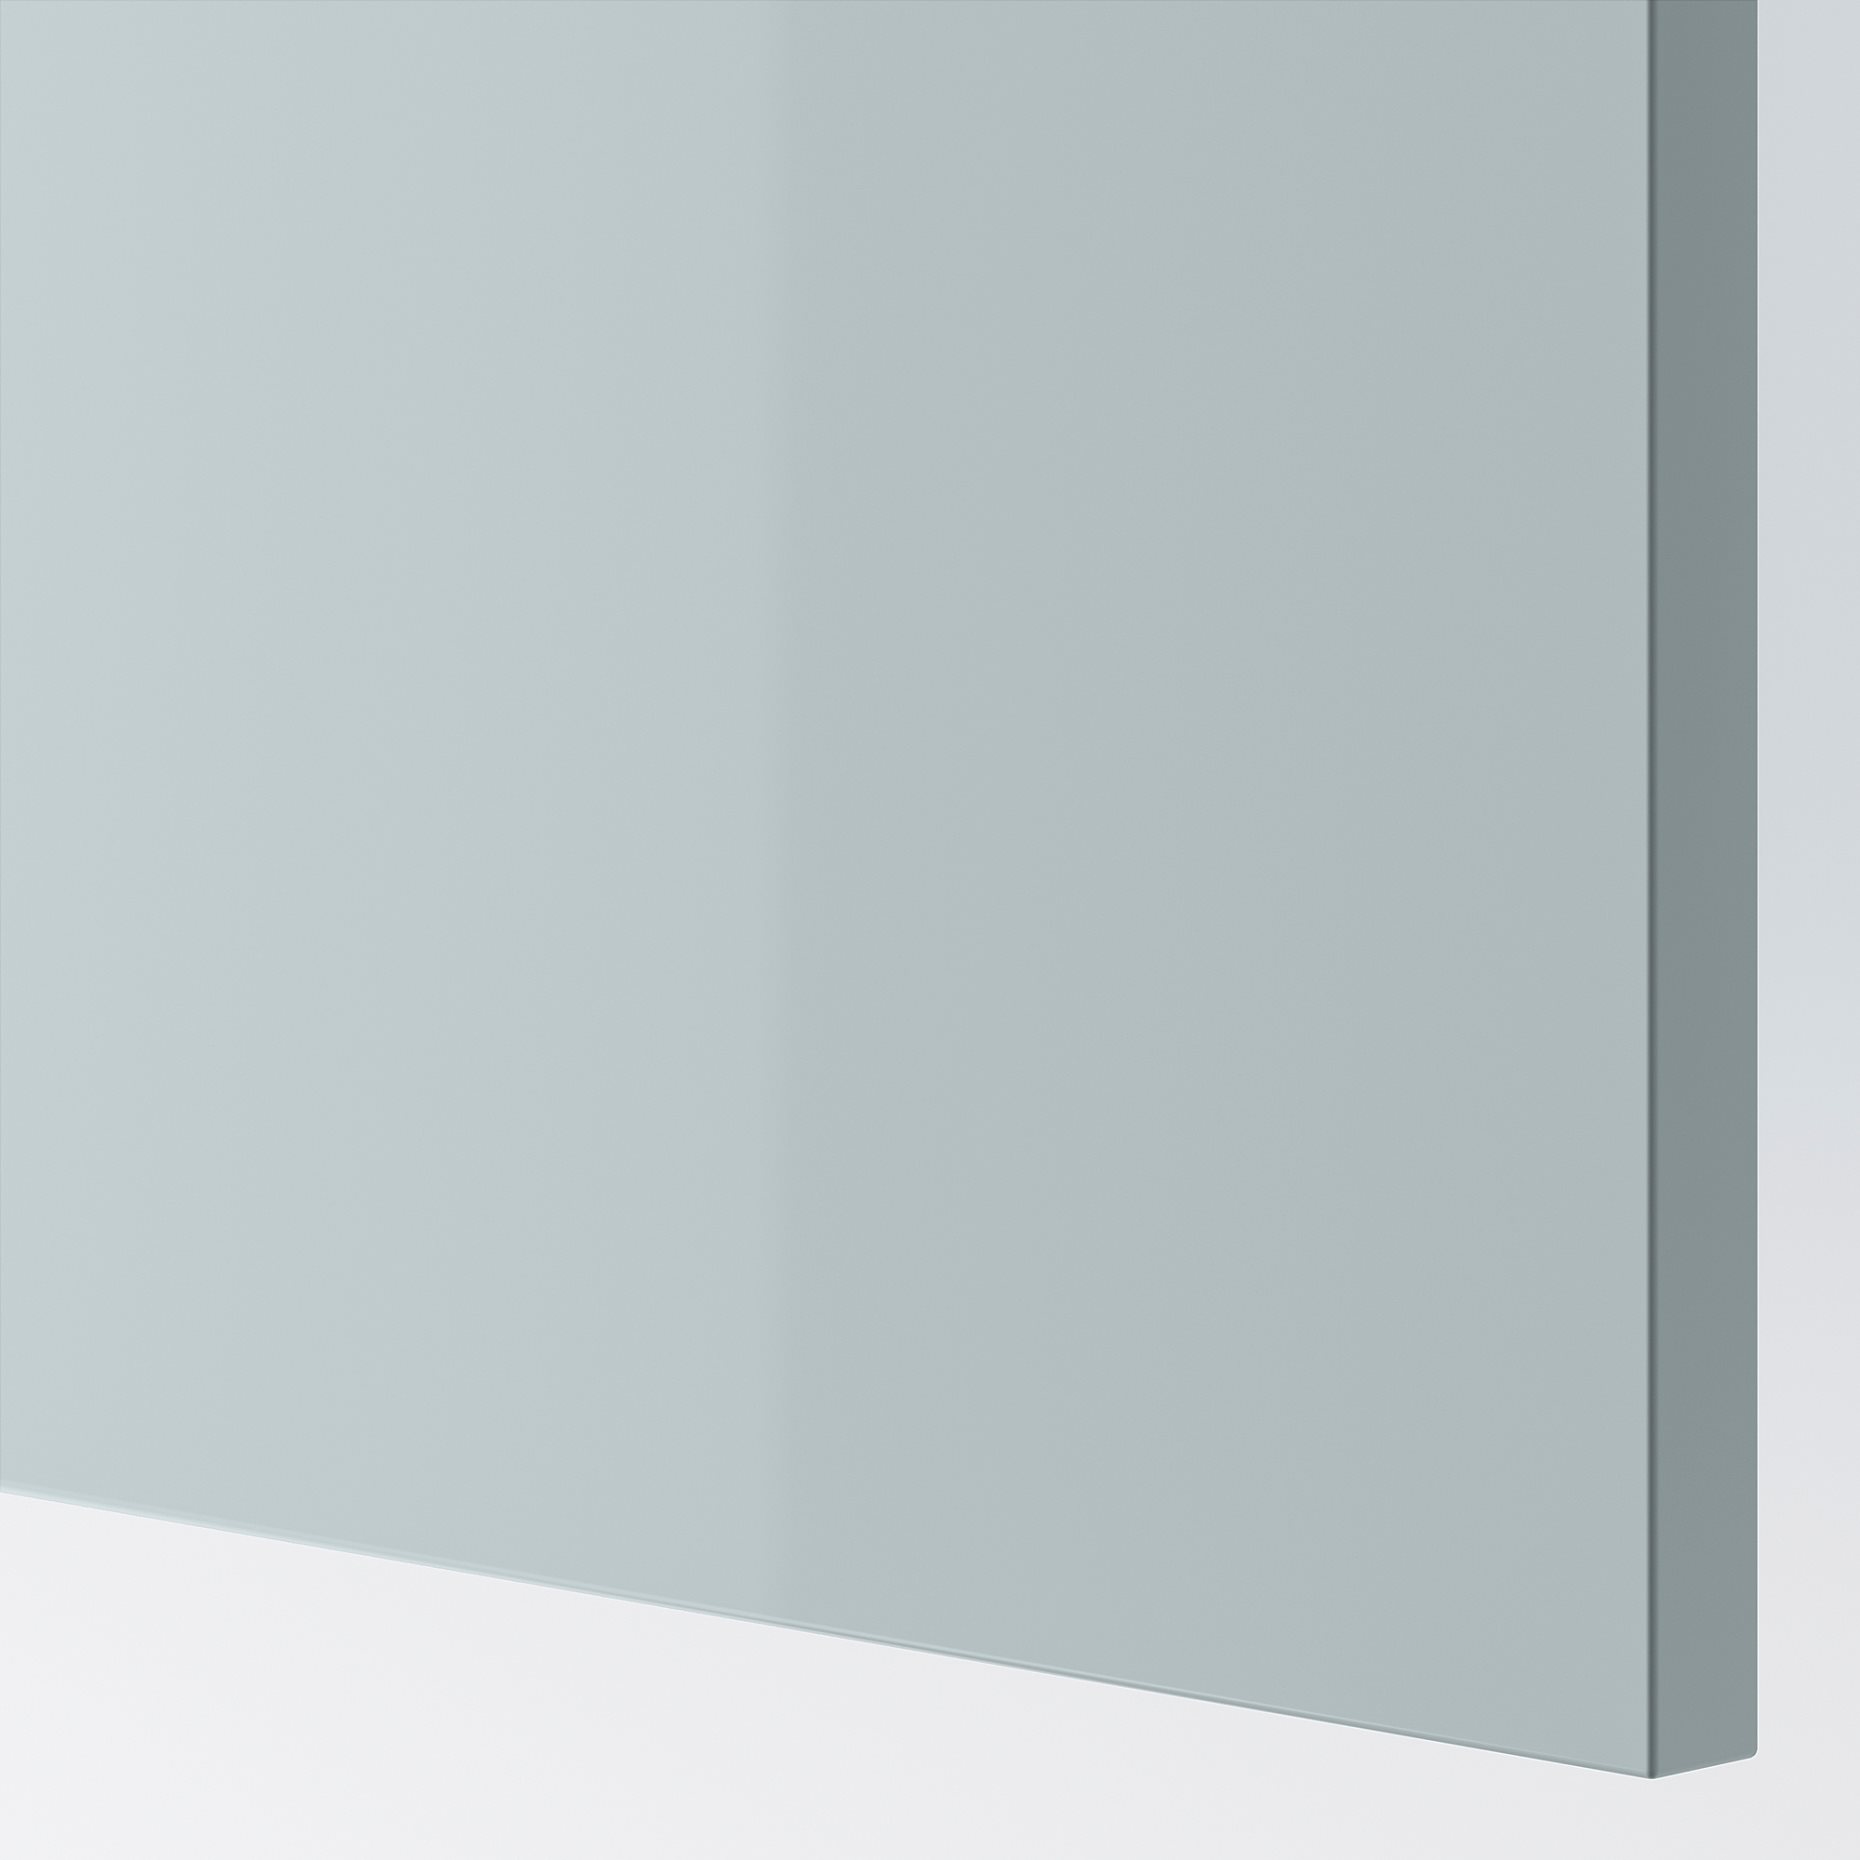 KALLARP, πόρτα για γωνιακό ντουλάπι βάσης/γυαλιστερό, 2 τεμ. 25x80 cm, 305.201.55